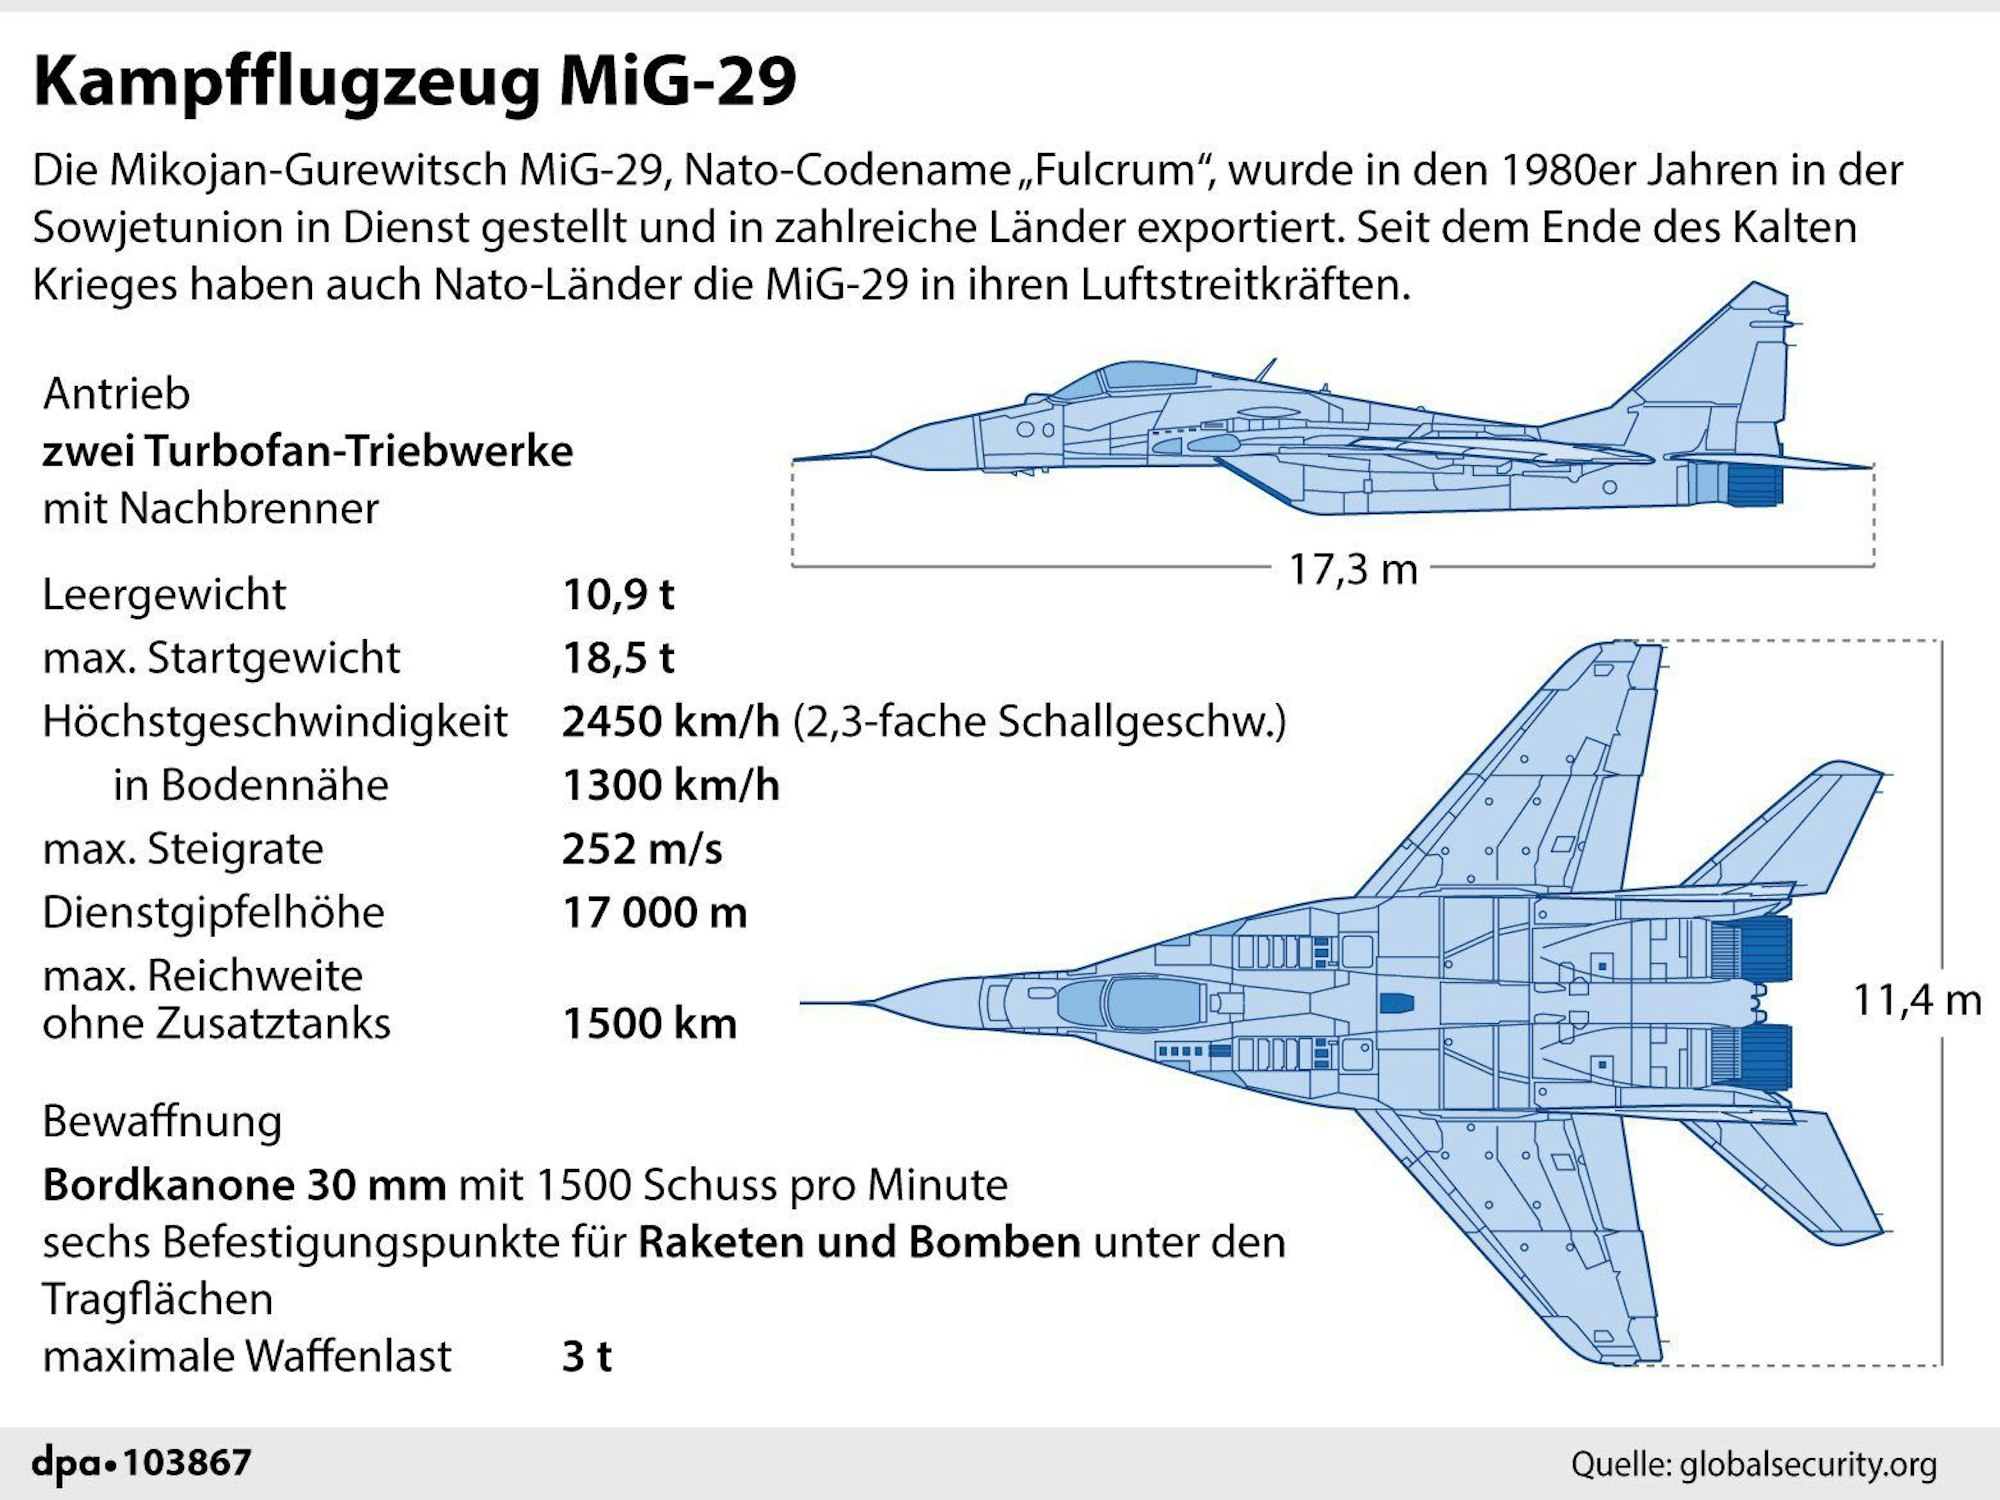 Abbildung mit Infos zu Gewicht, Geschwindigkeit etc. der MiG-29